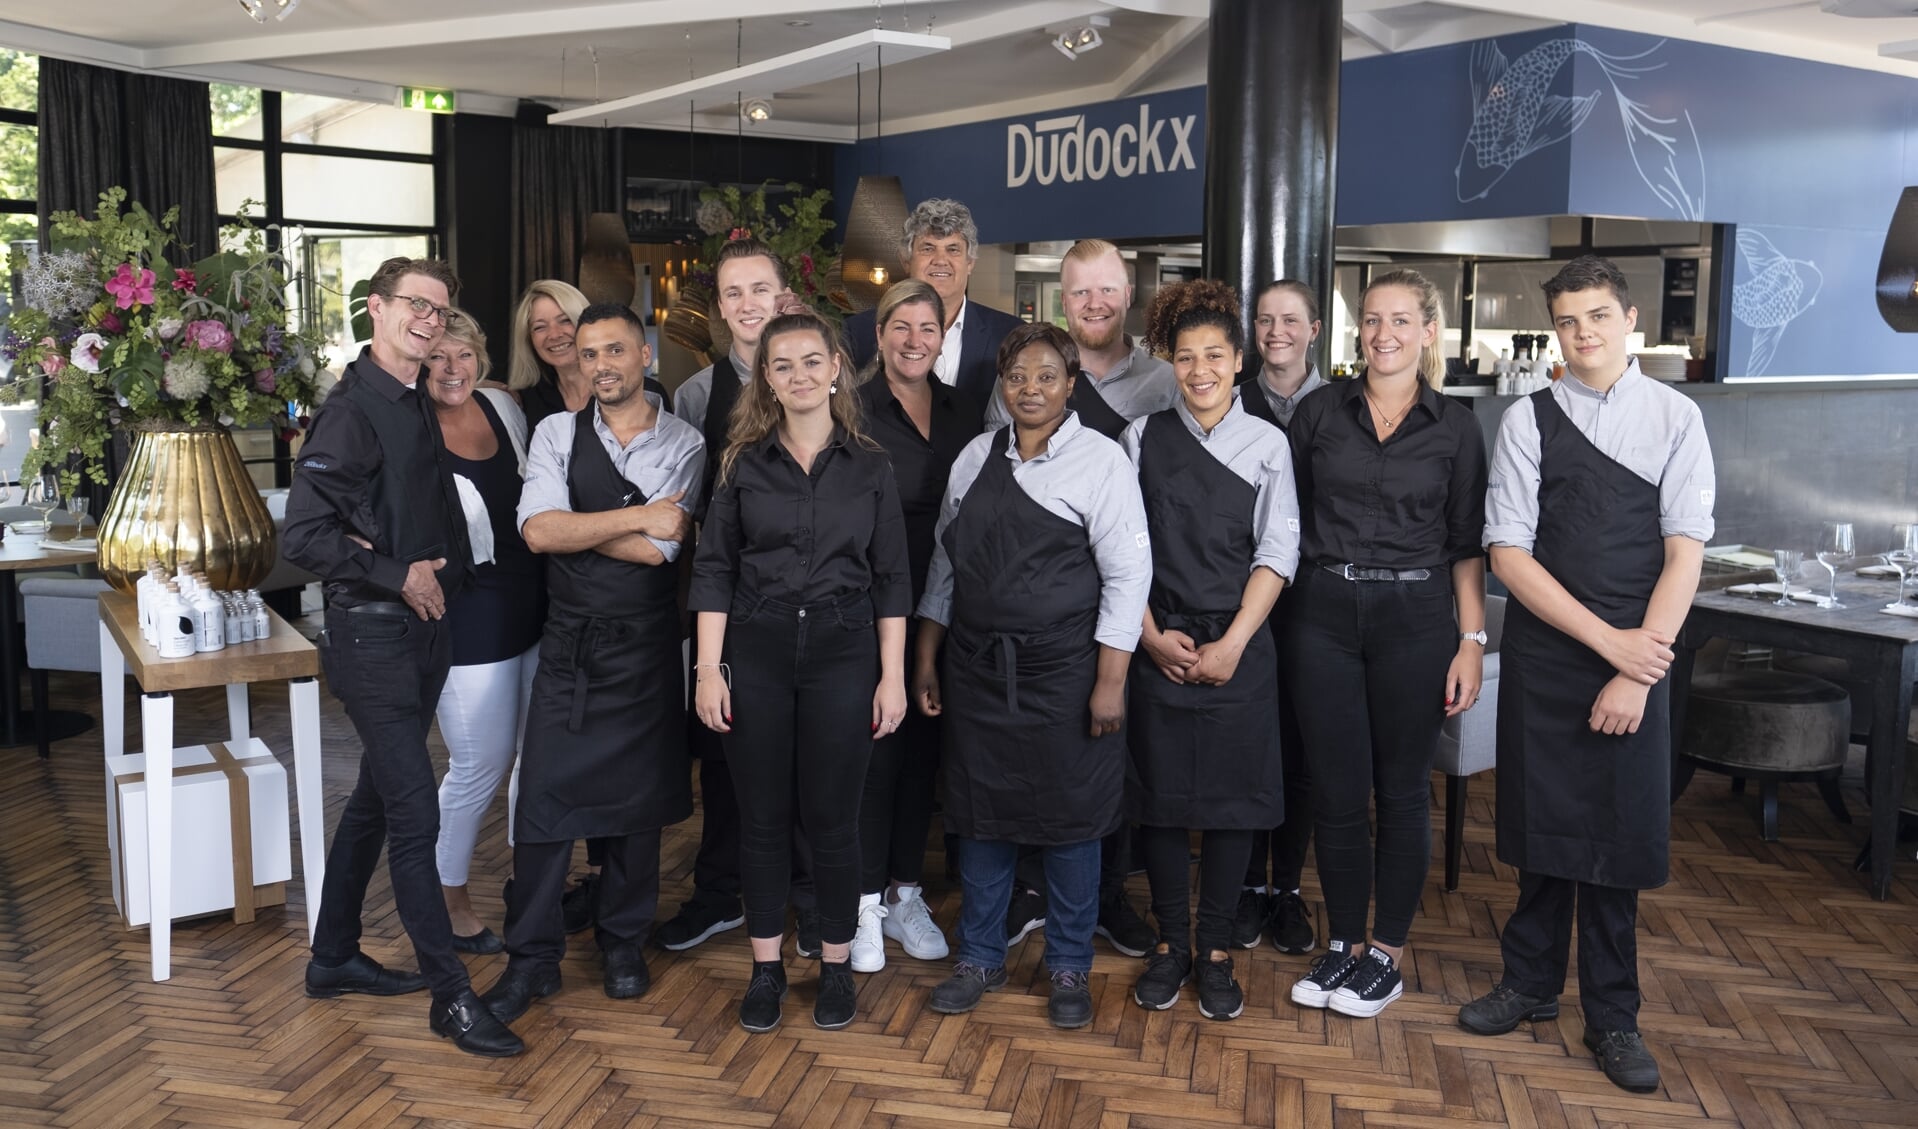 Het team van restaurant Dudockx met midden achter Henk Stamhuis.